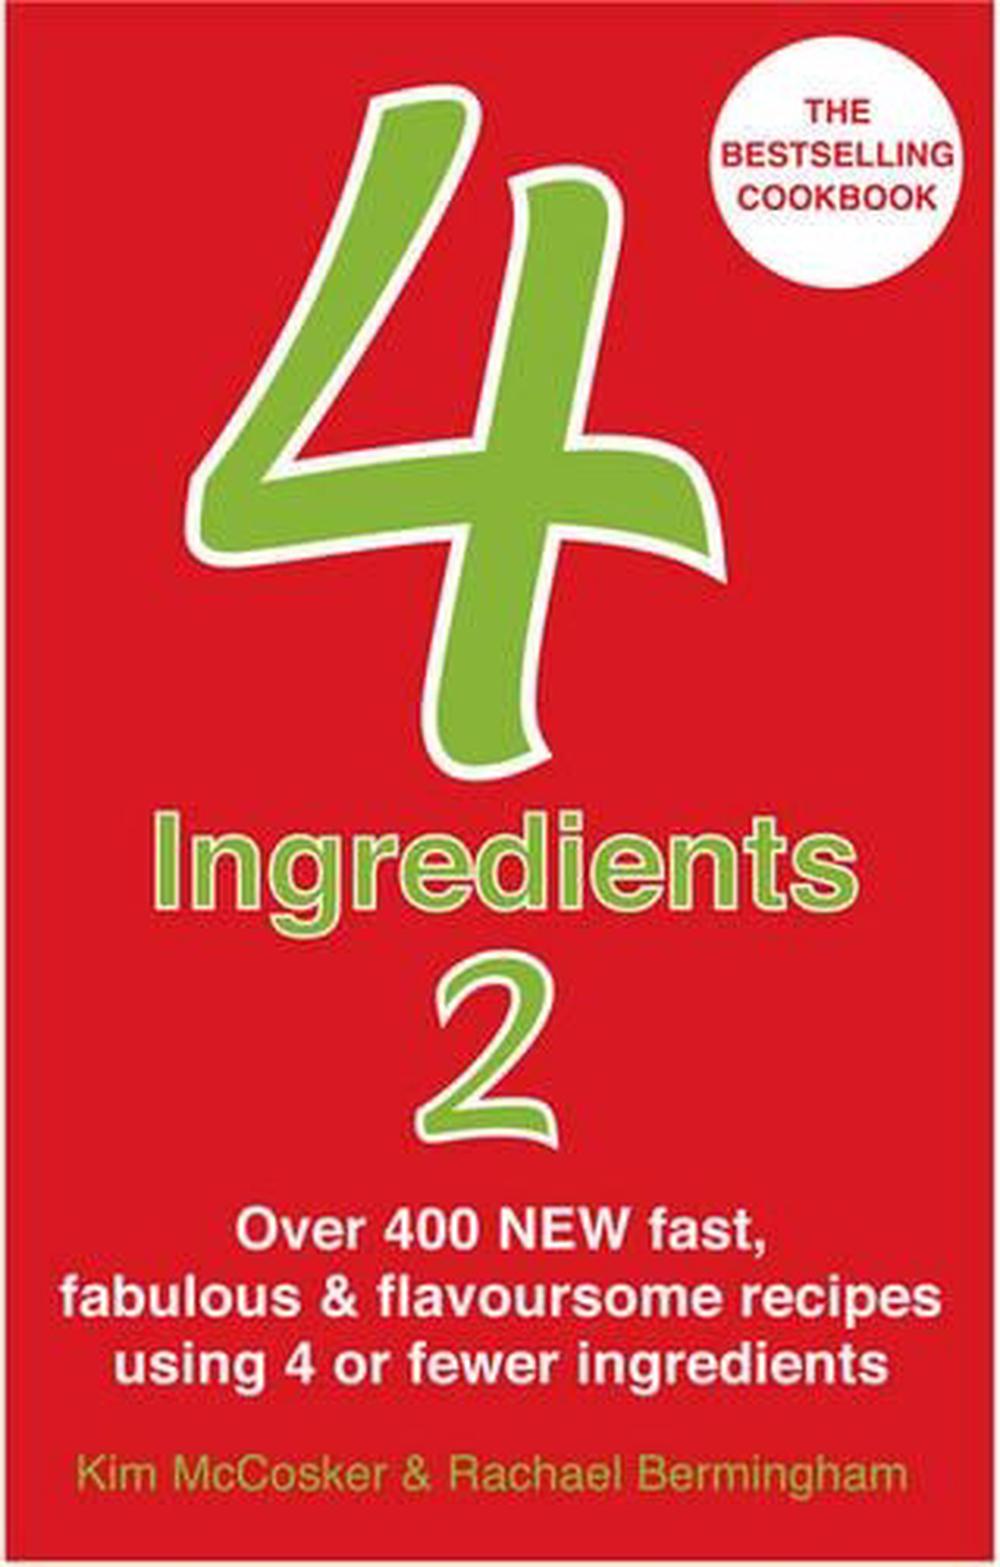 4 Ingredients 2 by Kim Mccosker, Paperback, 9780857200563 | Buy online ...